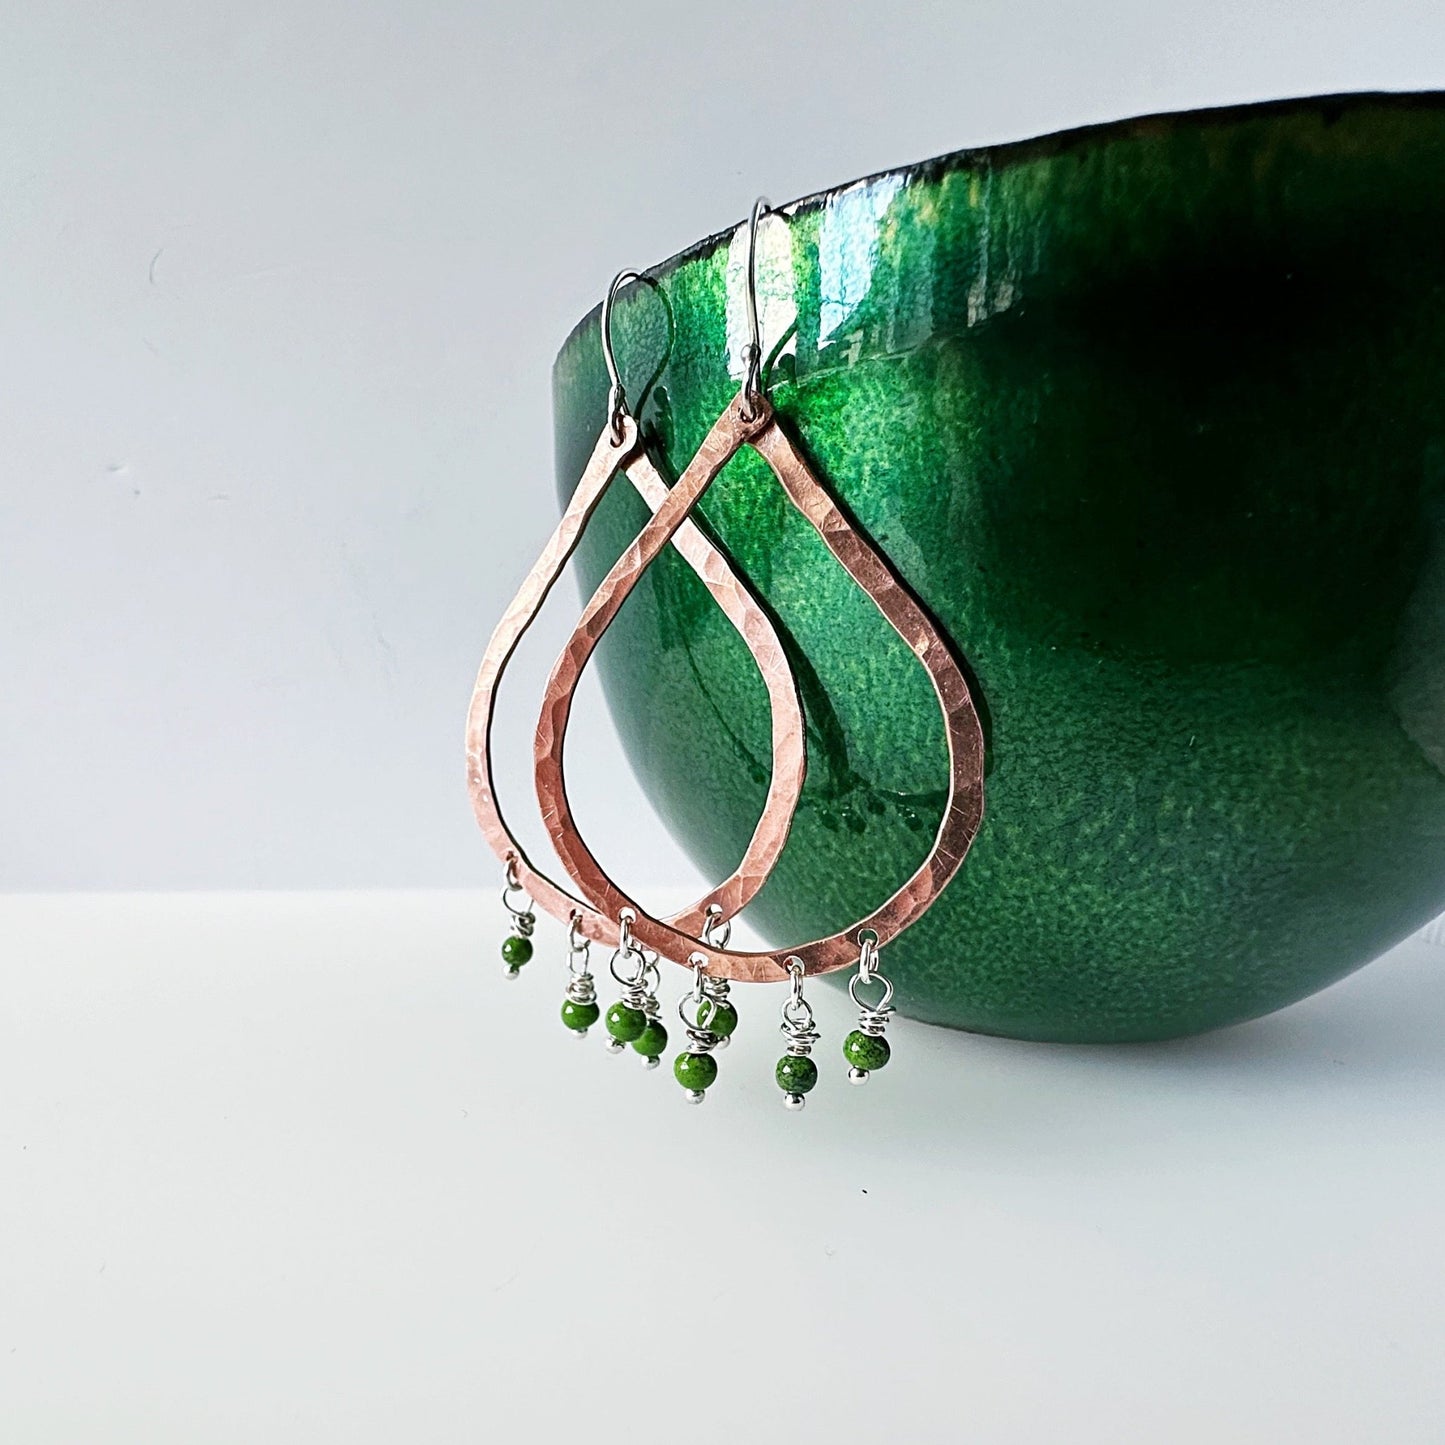 Copper Teardrop Statement Earrings with Enamel Beads - MaisyPlum